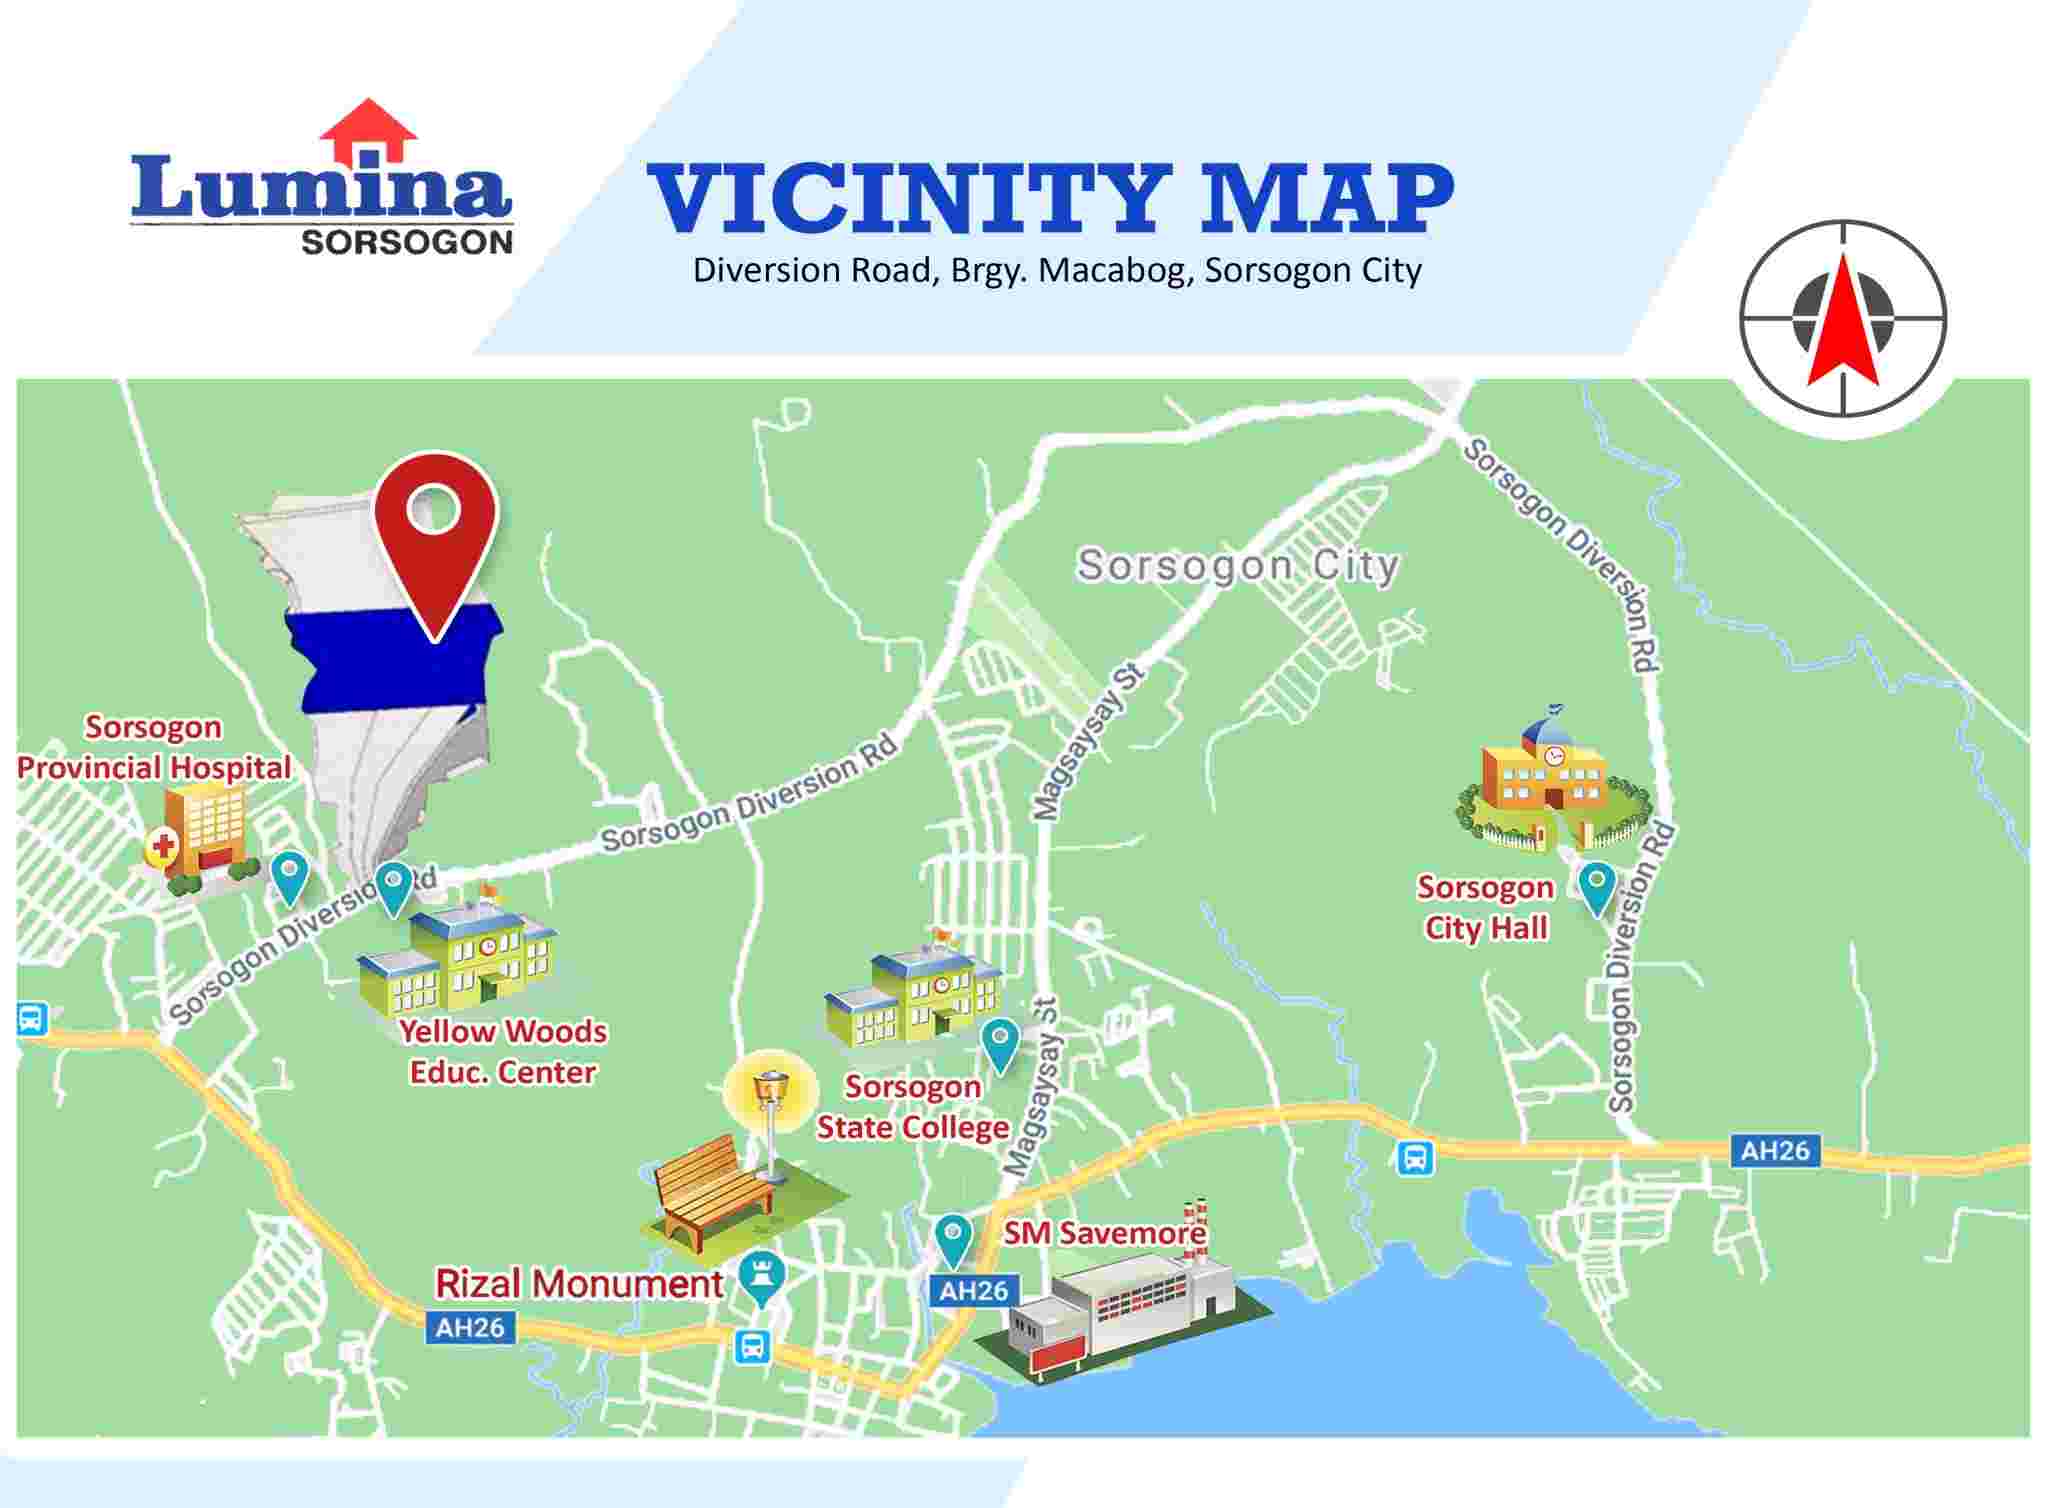 Vicinity-Map-1660024620.jpeg